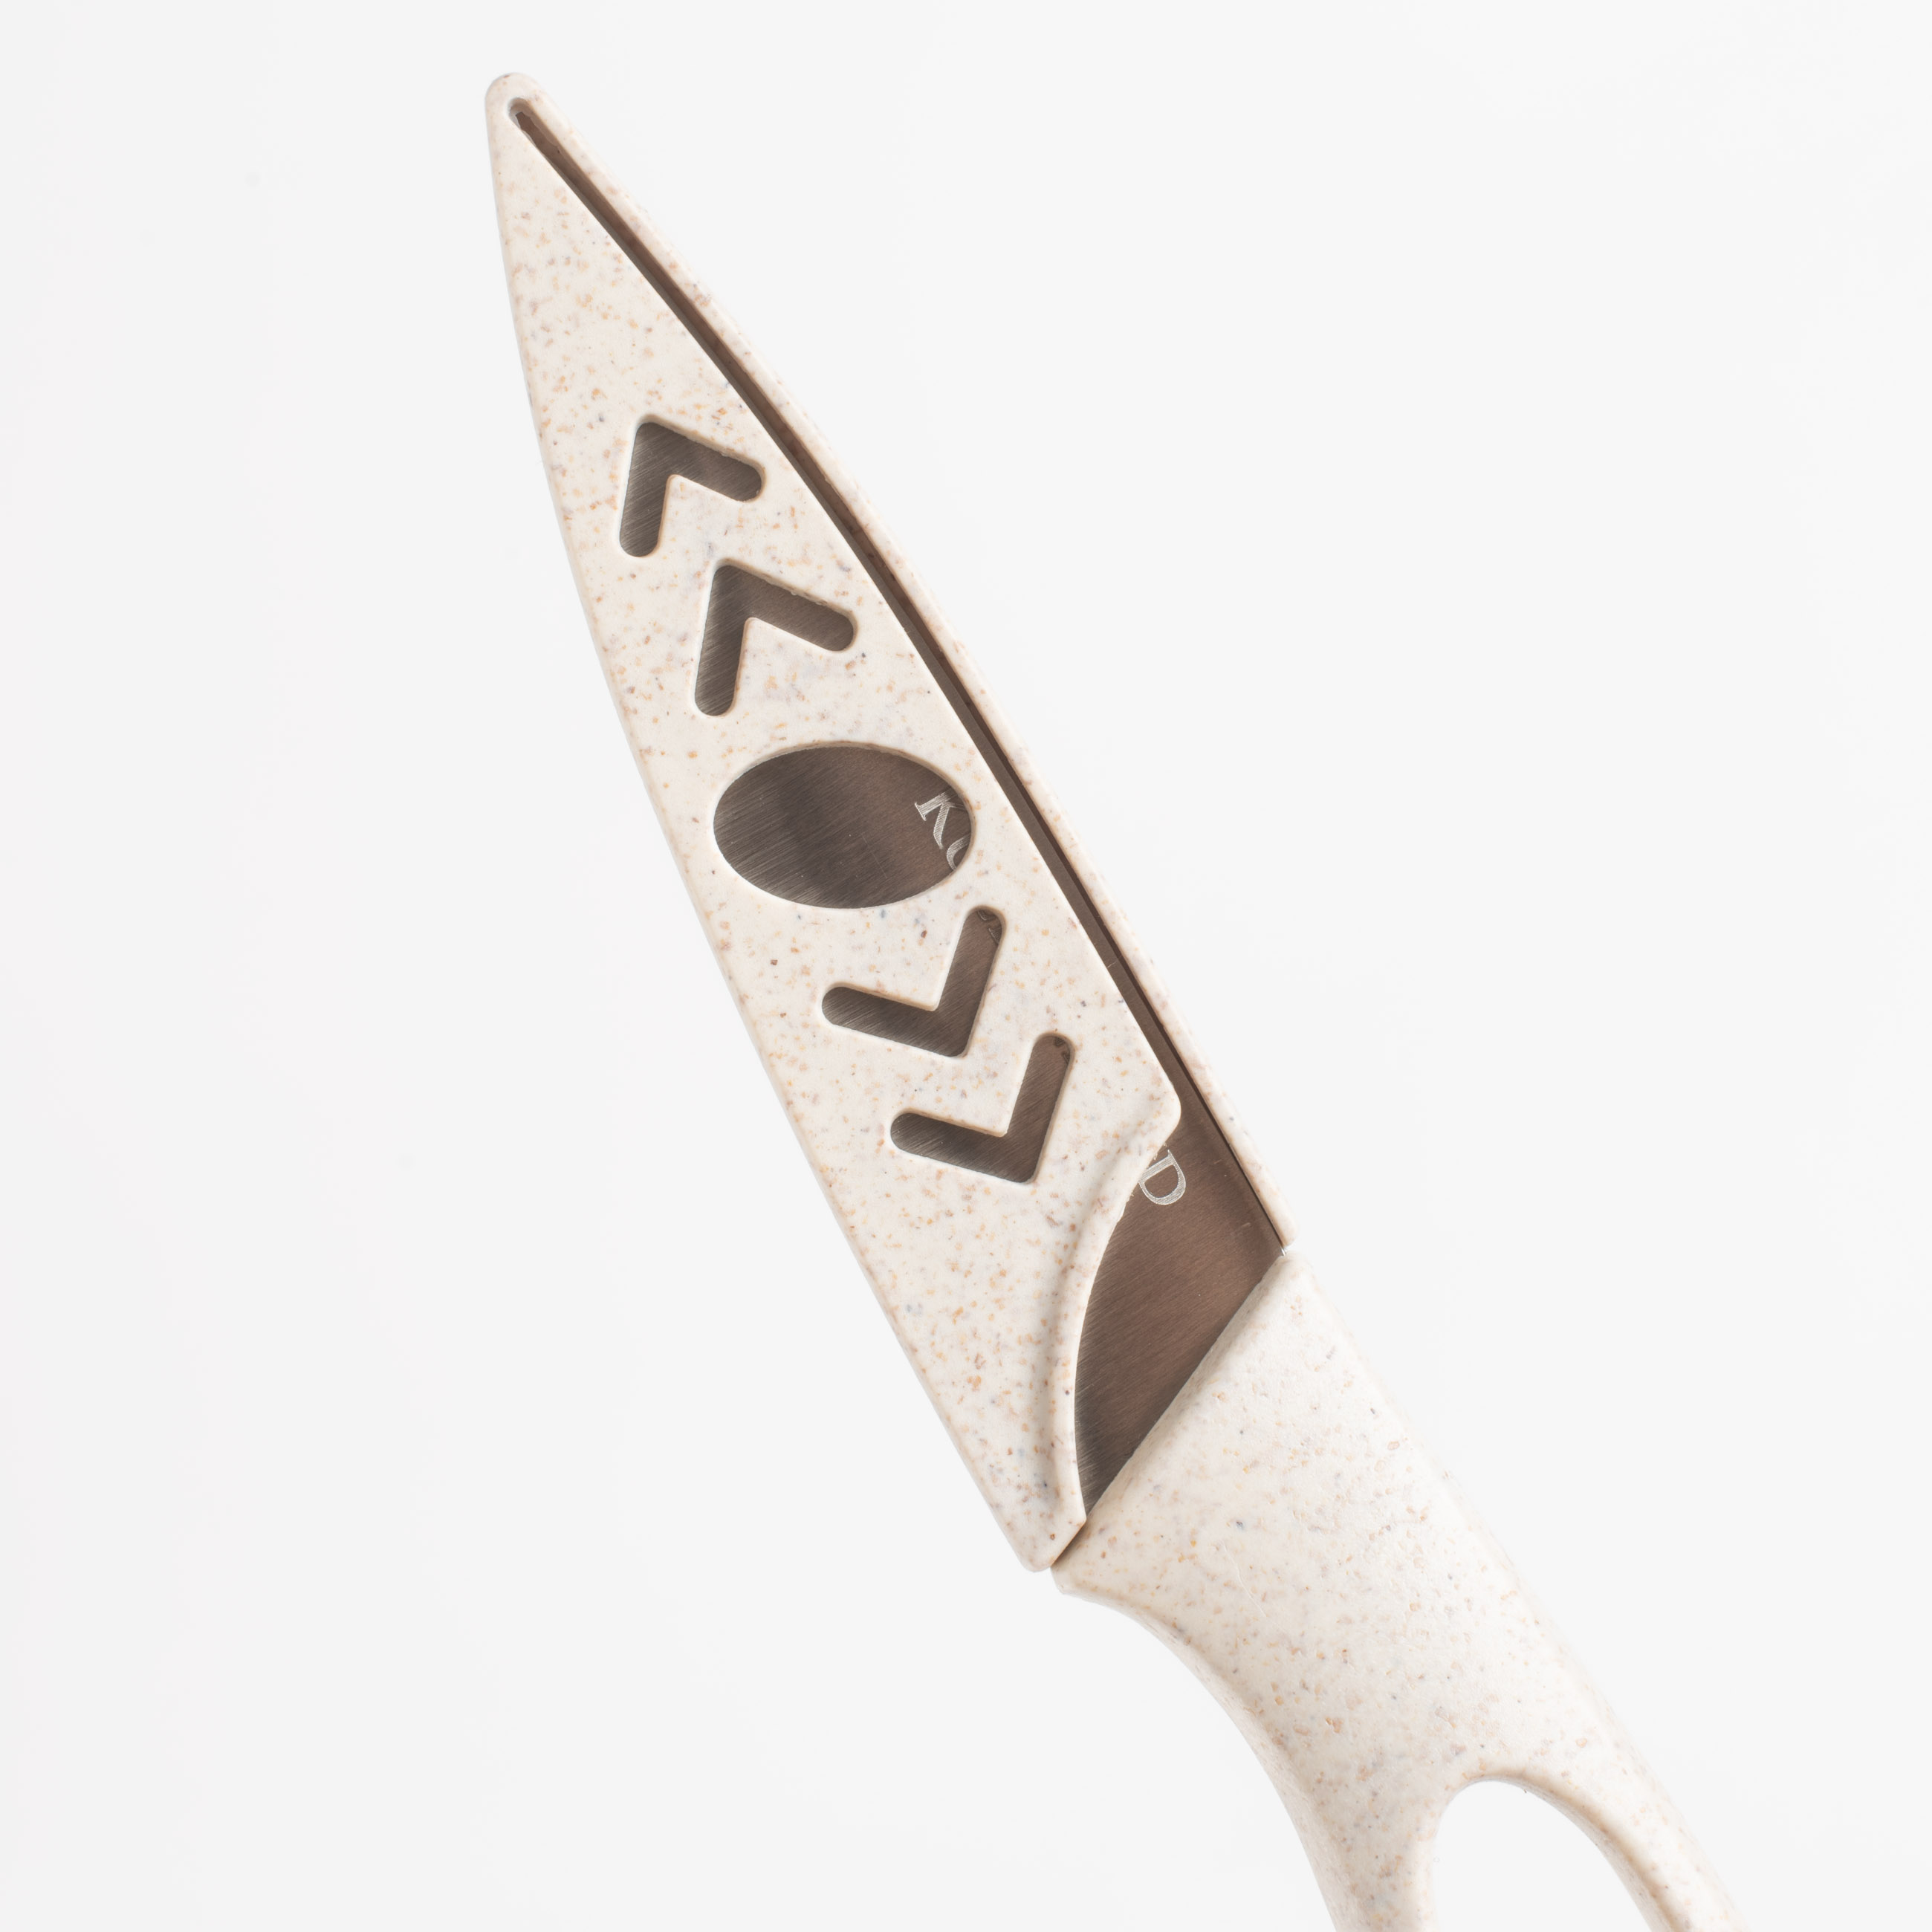 Нож для чистки овощей, 9 см, с чехлом, сталь/пластик, бежевый, в крапинку, Soft speckled изображение № 4